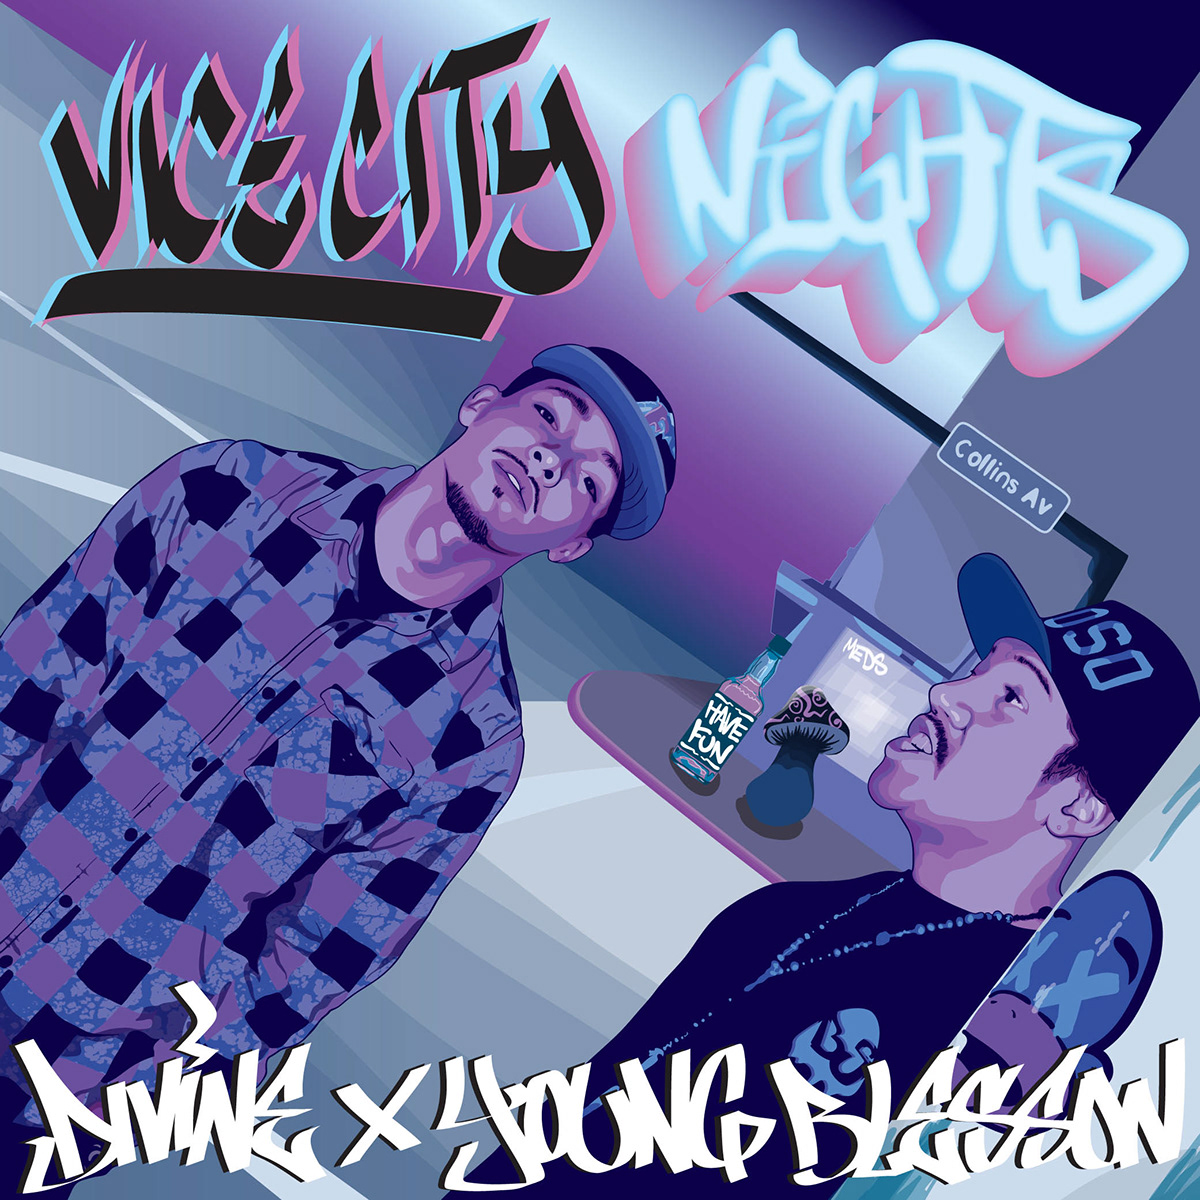 miami Vice City Nights album cover